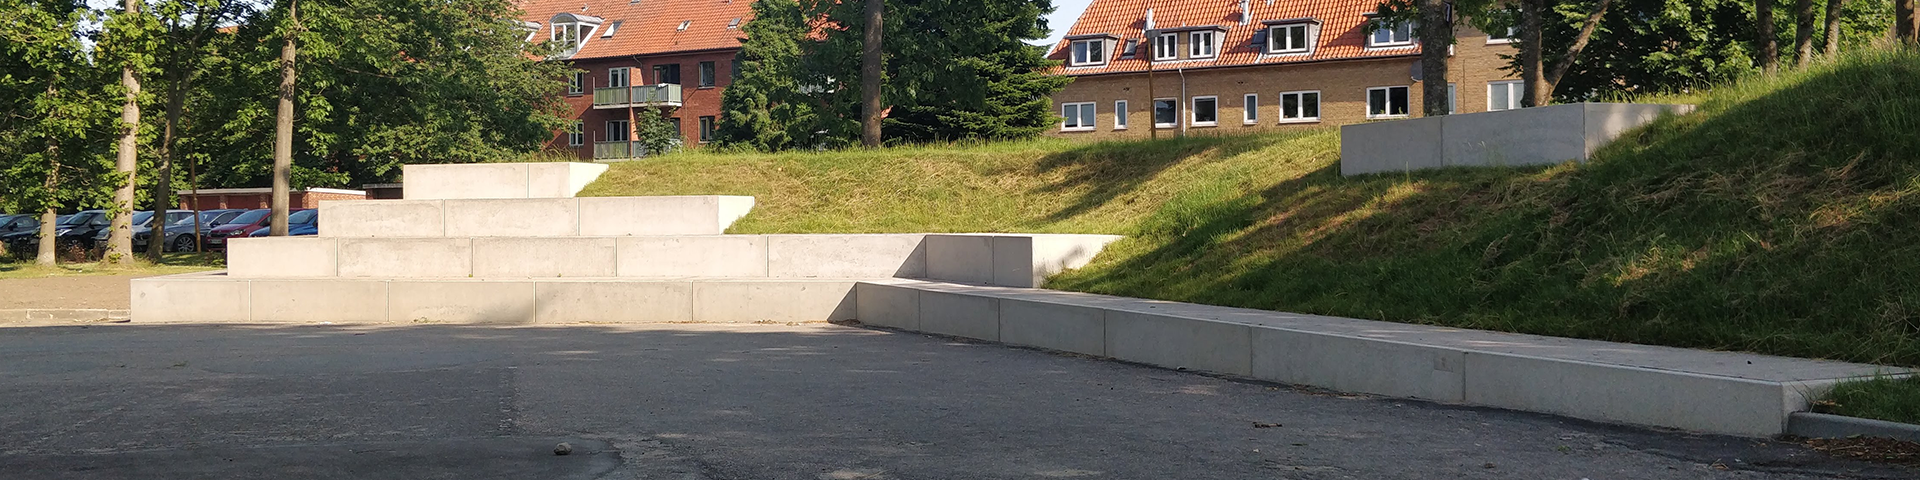 Bosch Beton - Keerwanden zorgen voor zitplekken in openbaar park Roesskovsvej in Odense (DK)